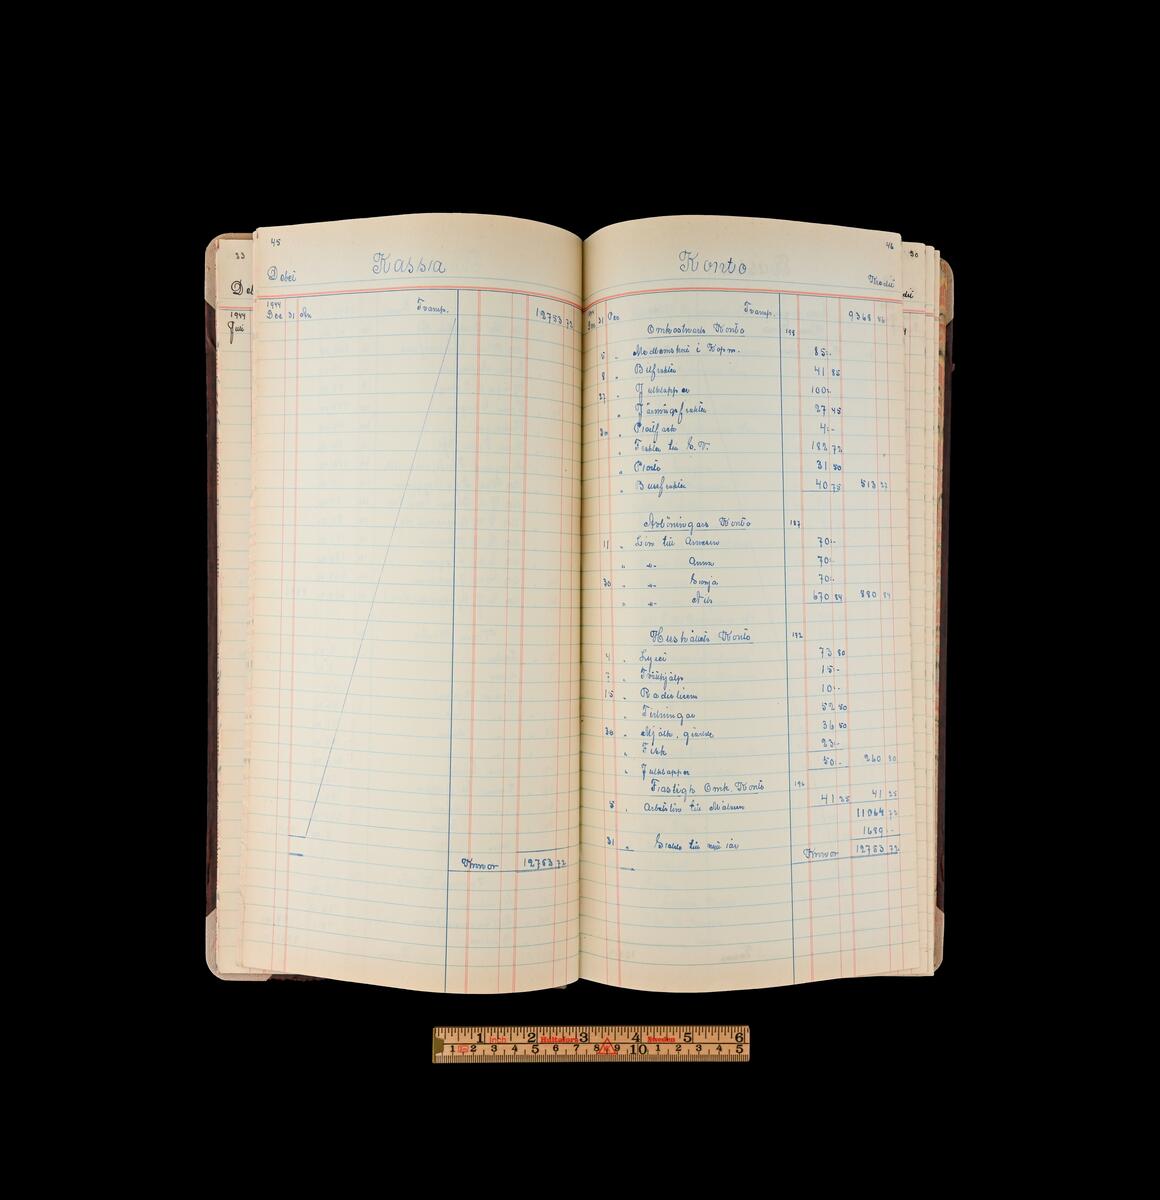 Kassabok från lanthandeln Häglund vid Isums station i Atlingbo. Brunmönstrad pärm med blågrå tygrygg. Sidornas kanter är marmorerade. På bokens framsida en fastklistrad etikett utan påskrift. Anteckningarna i boken sträcker sig från 1944-1945.